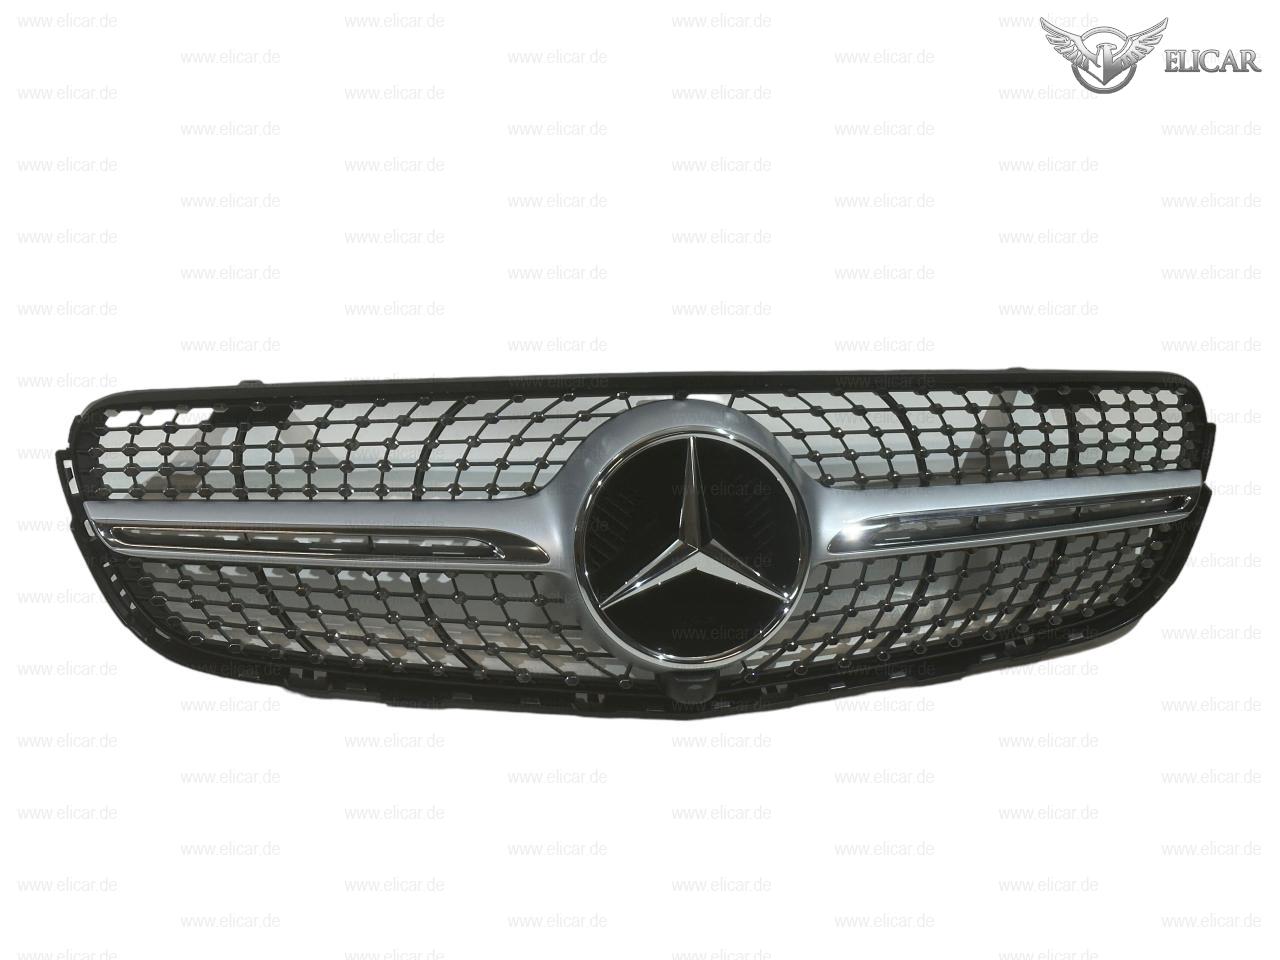 Grill / Kühlerverkleidung  e tr für Mercedes-Benz 